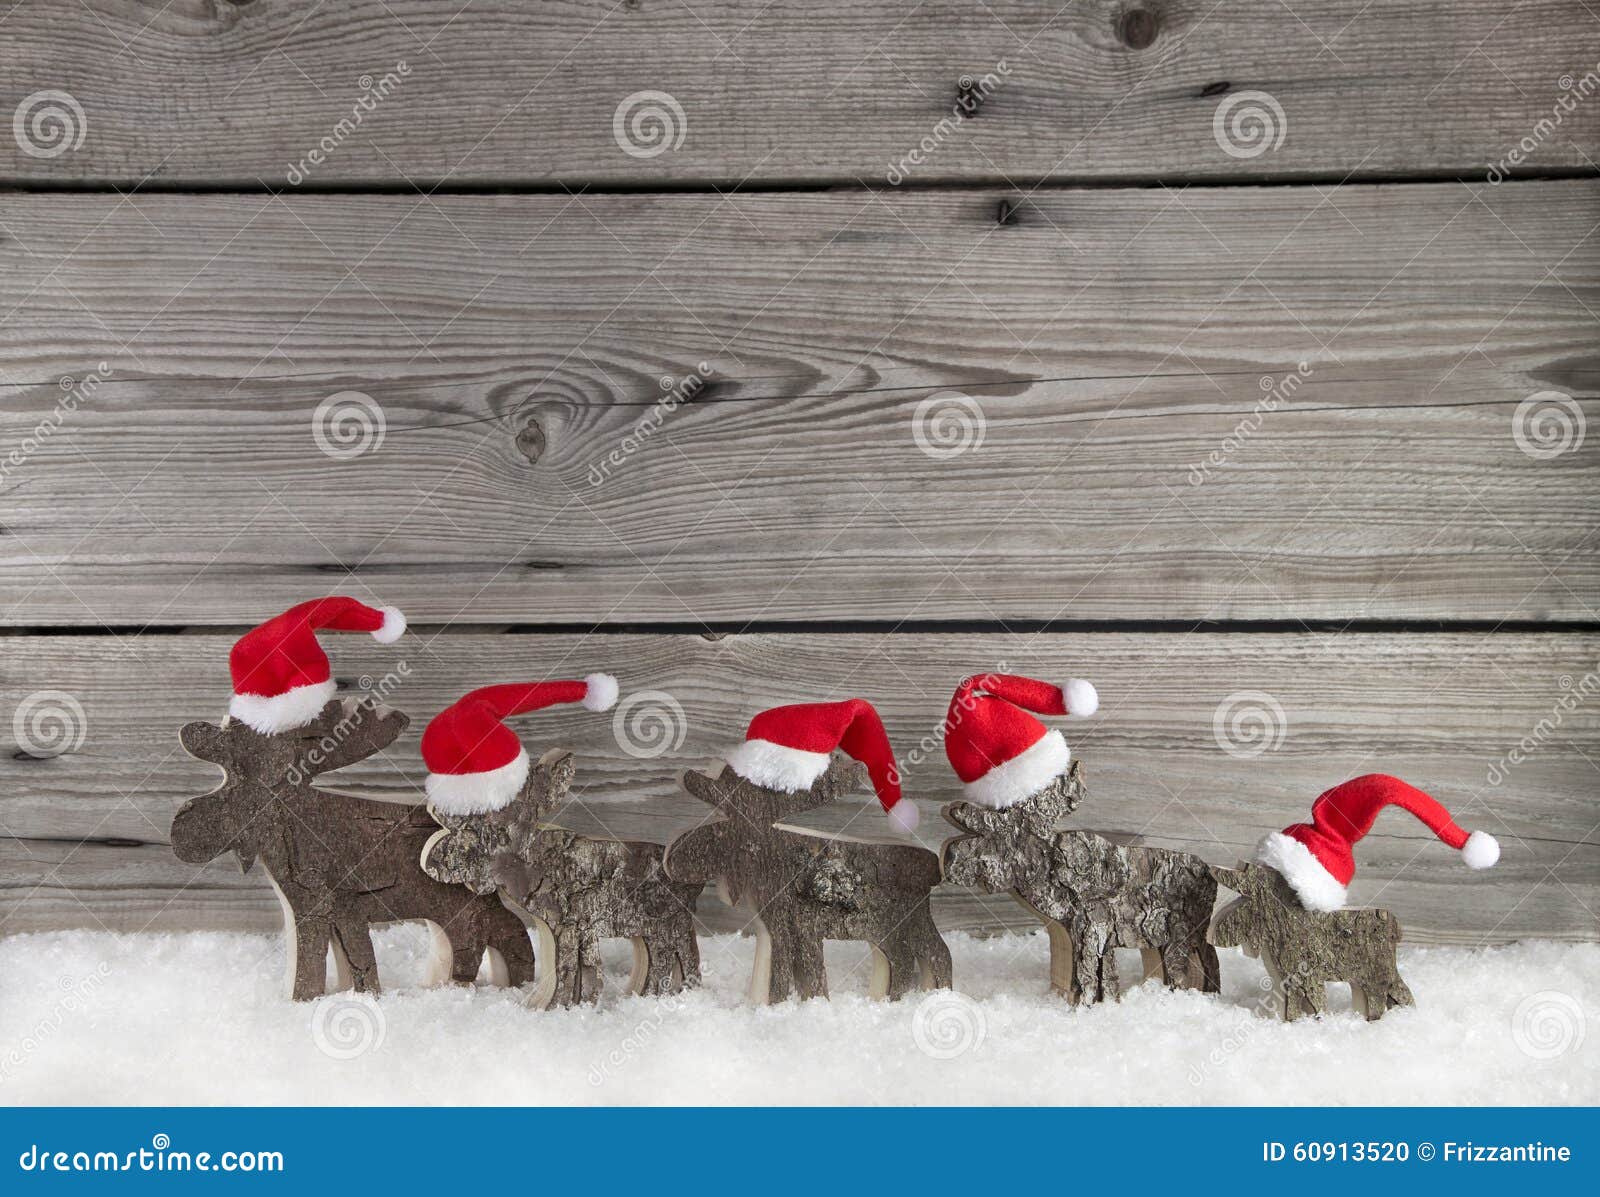 Nếu bạn đang tìm kiếm một hình nền Giáng sinh độc đáo để tạo không khí lễ hội cho cửa hàng của mình, thì hình nền Giáng sinh gỗ của chúng tôi sẽ là sự lựa chọn tuyệt vời cho bạn. Với những hình ảnh ông già Noel và cành thông trên gỗ, bạn sẽ tạo ra một sự ấm áp, tươi vui cho khách hàng của mình trong mùa lễ hội.